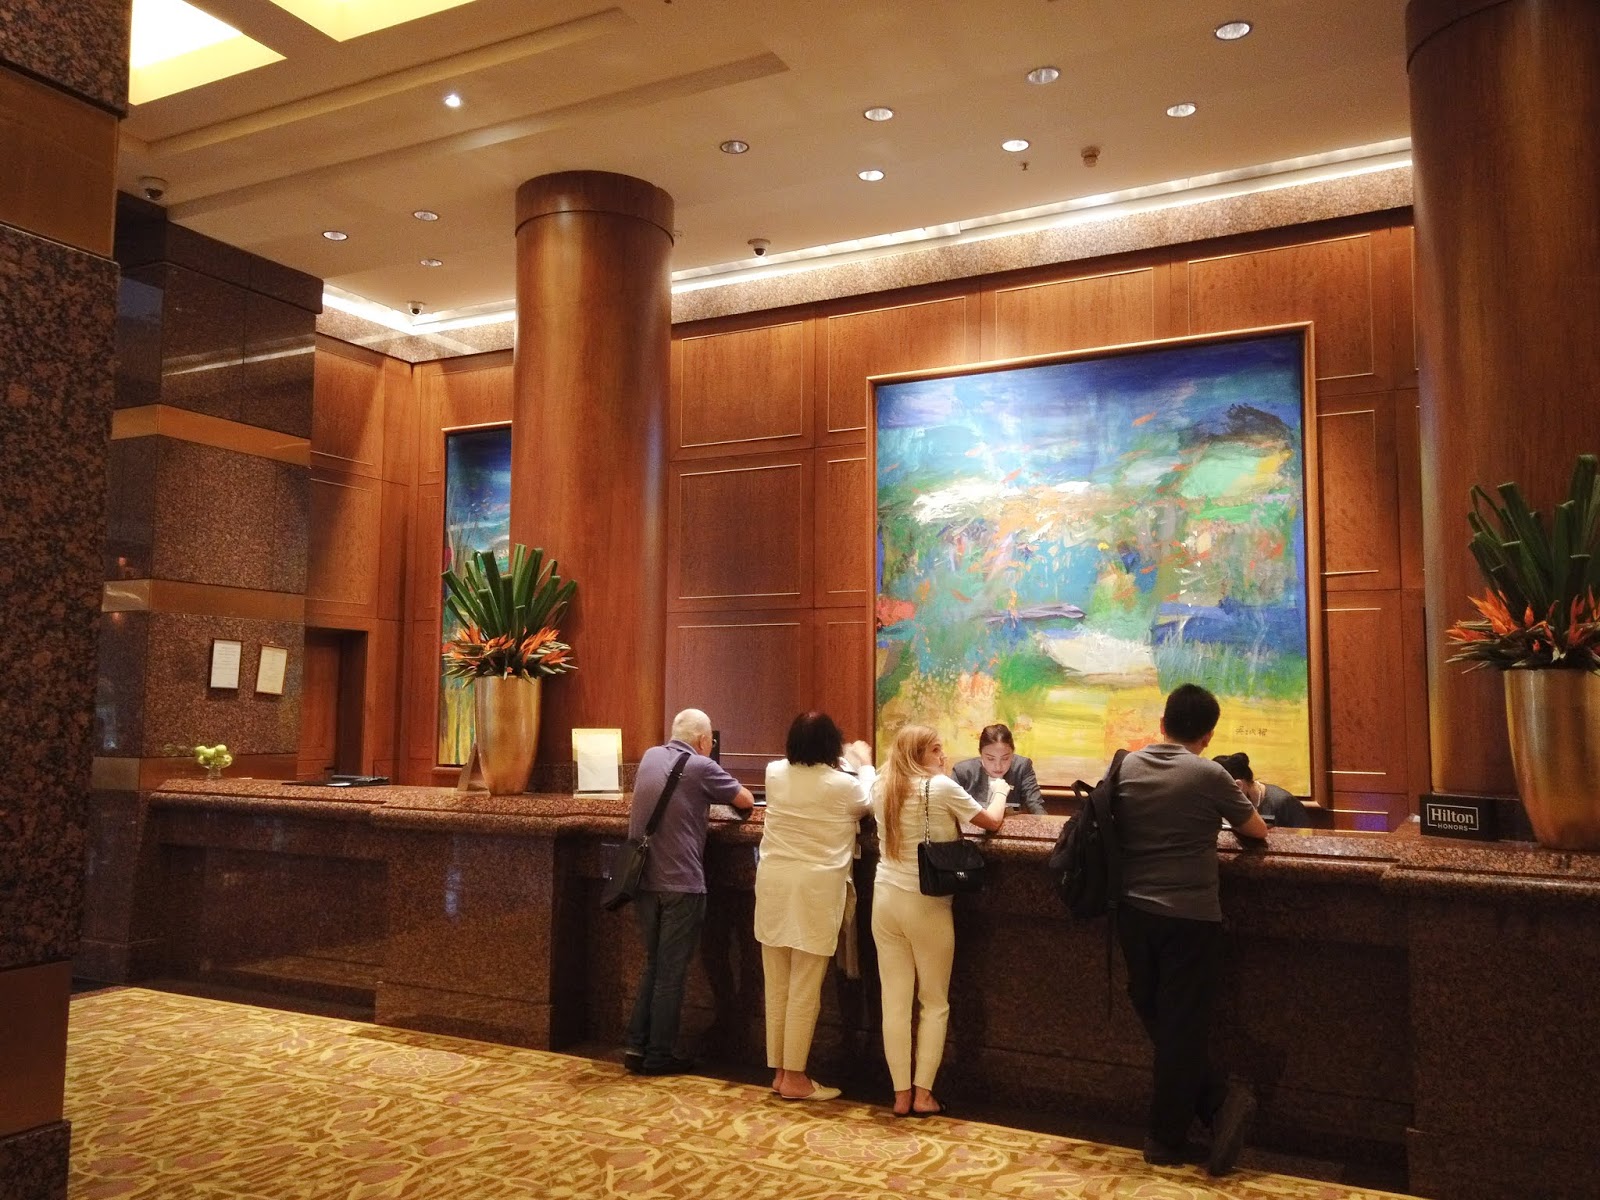 Conrad Centennial Singapore Executive King Room Review   